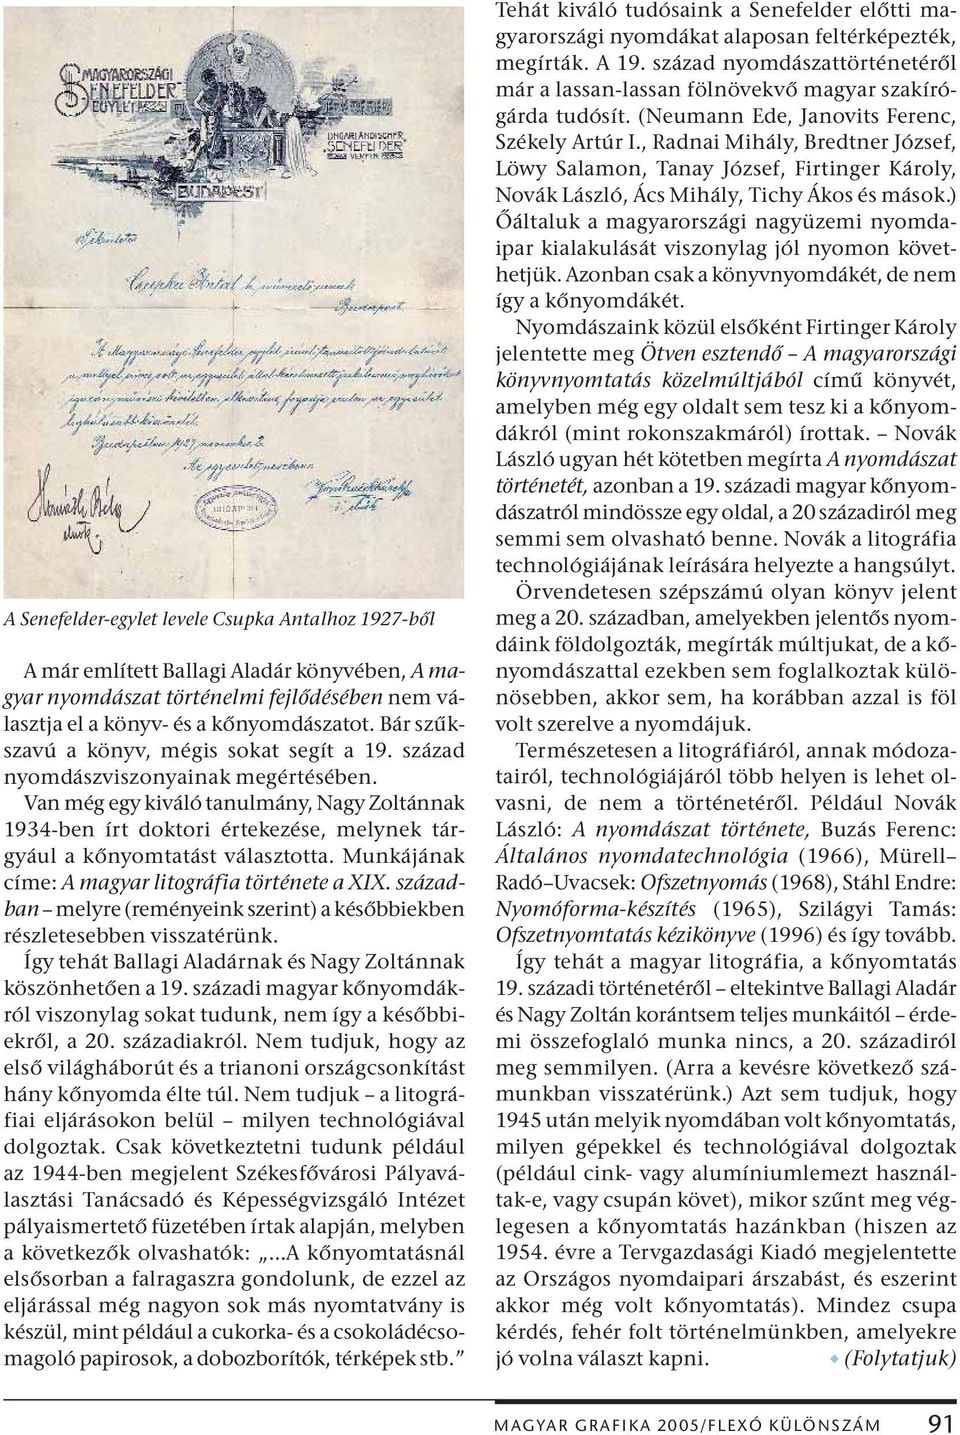 Van még egy kiváló tanulmány, Nagy Zoltánnak 1934-ben írt doktori értekezése, melynek tárgyául a kőnyomtatást választotta. Munkájának címe: A magyar litográfia története a XIX.